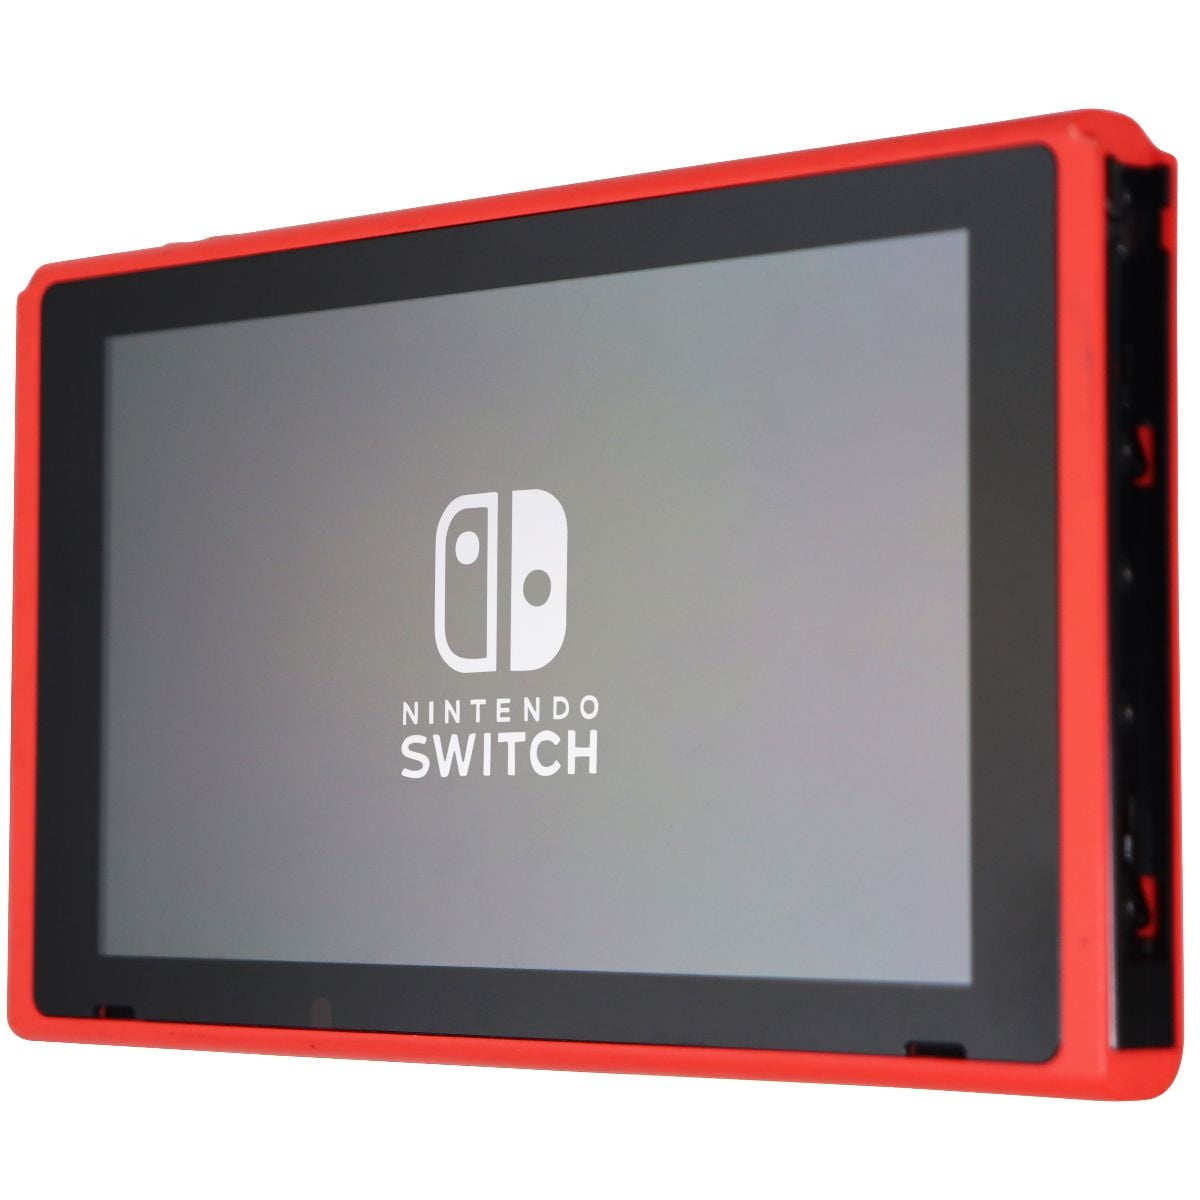 売り出し人気商品 Nintendo [HAC-001] Switch 家庭用ゲーム本体